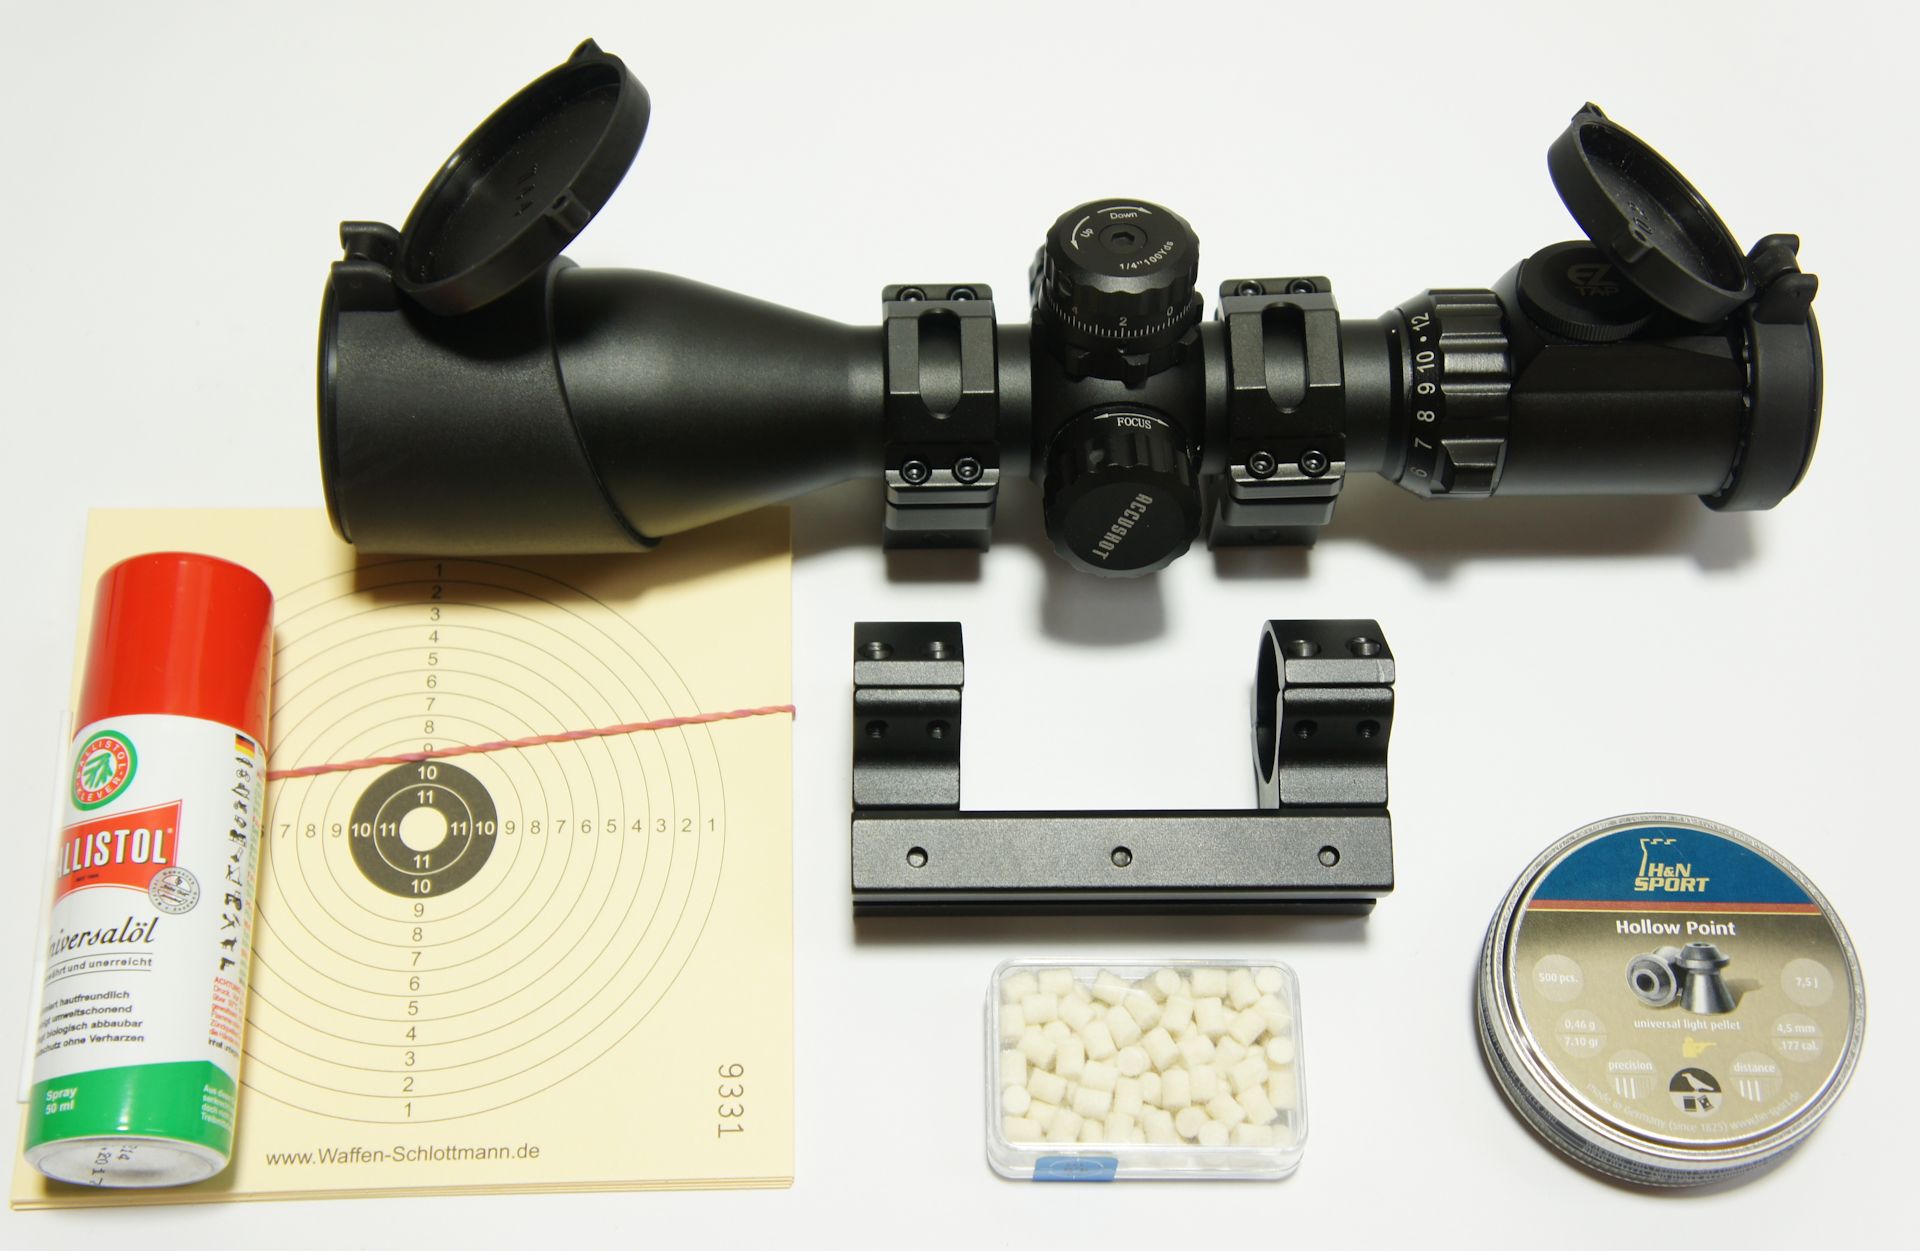 RTU Erweiterungs-Set mit Zielfernrohr UTG Compact 3-12x44 am Luftgewehr HW 77 + inkl. Montage und Einschießen